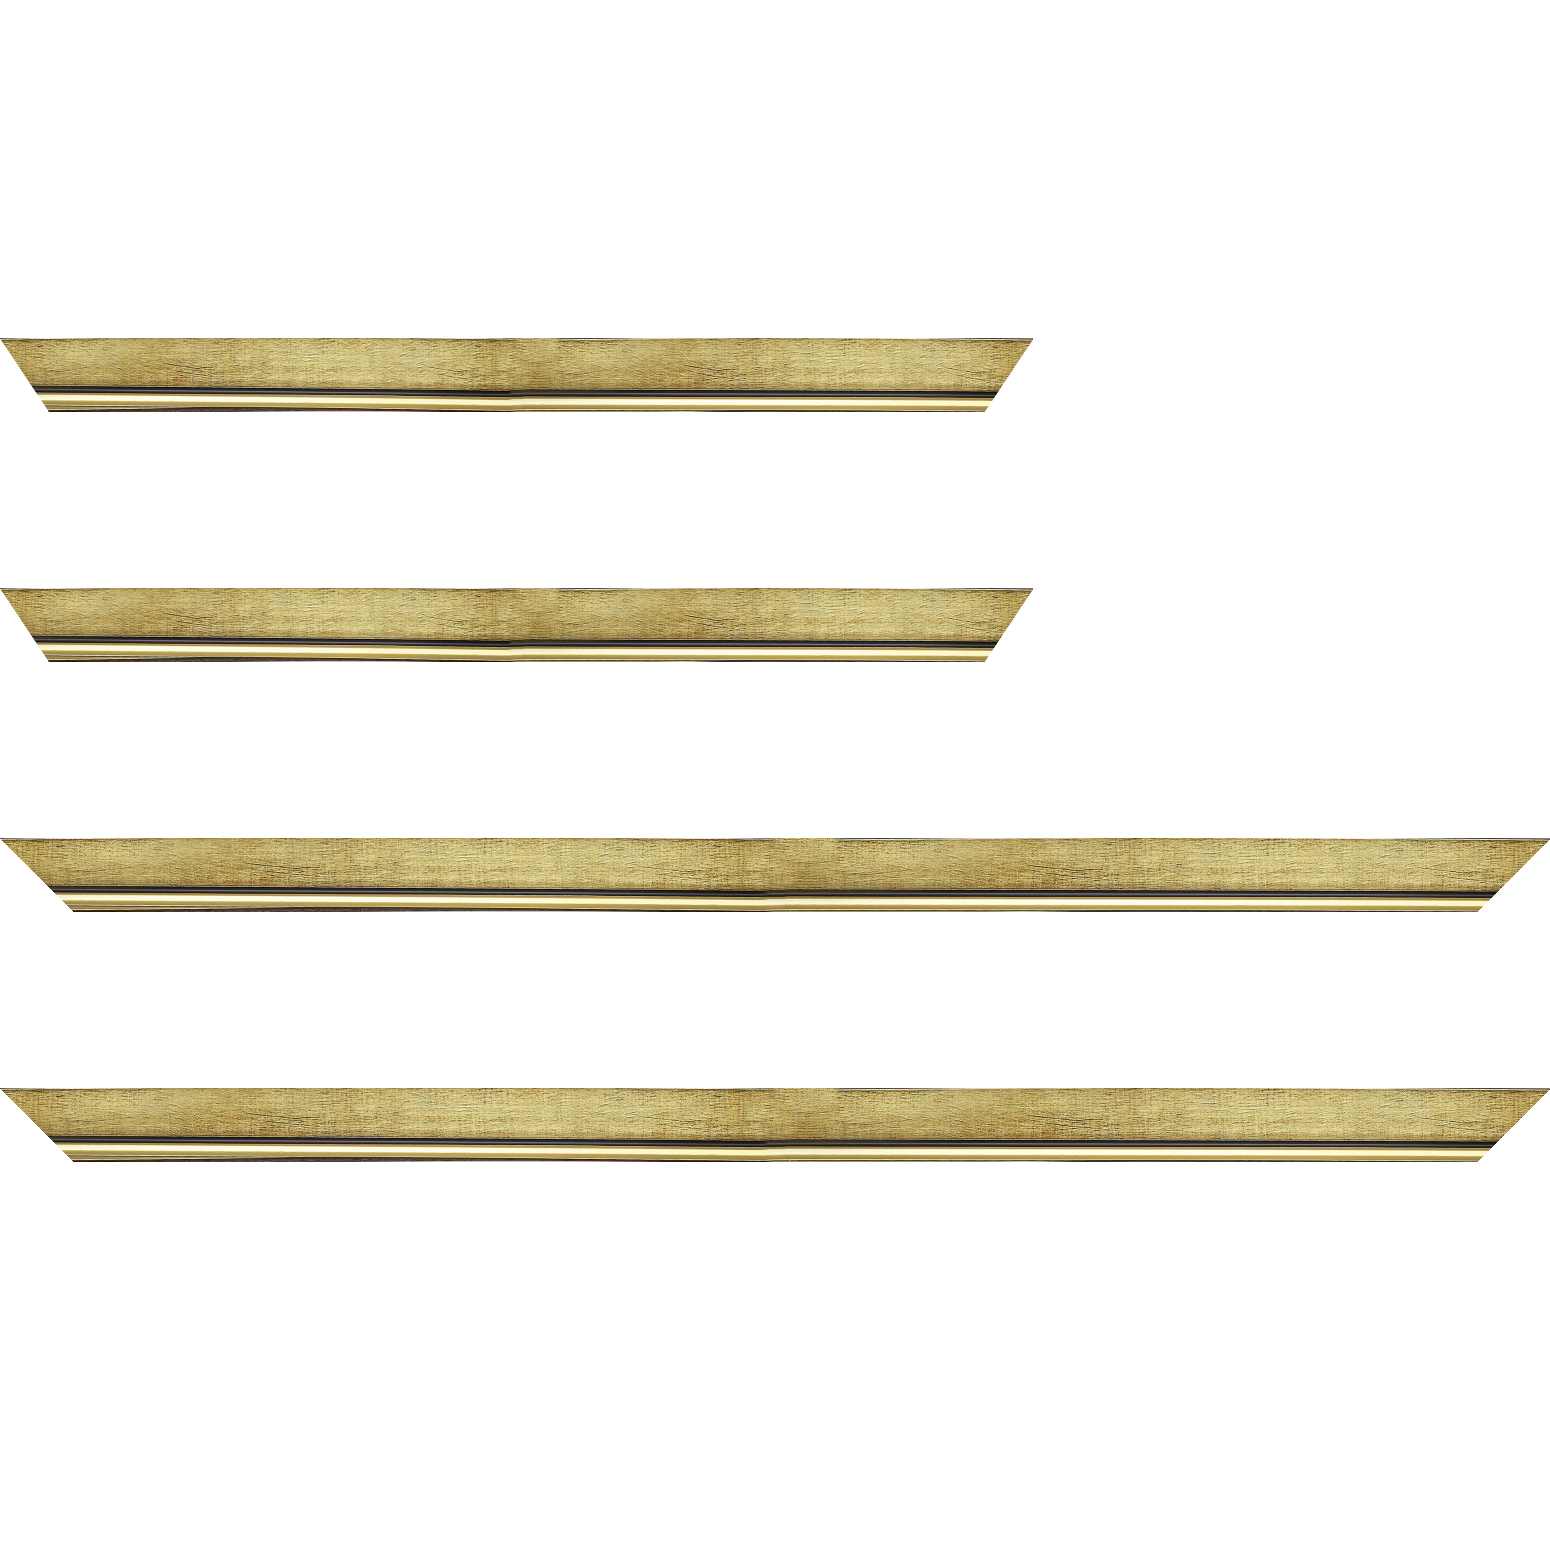 Baguette bois profil plat largeur 2.5cm couleur or filet or surligné noir - 50x60